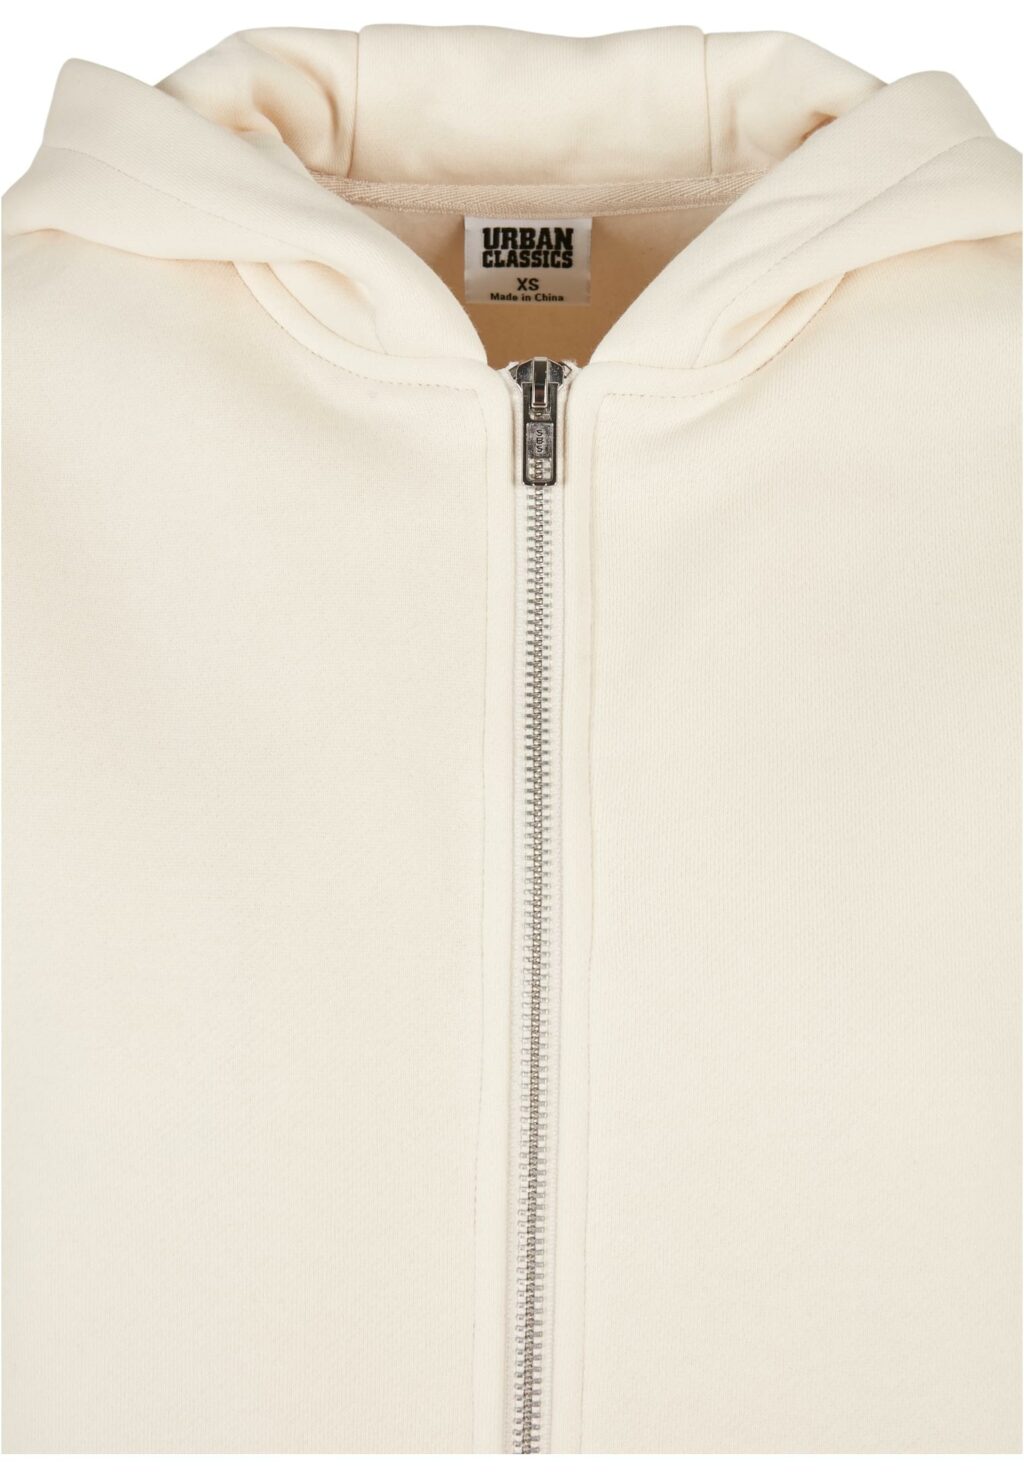 Urban Classics Ladies Short Oversized Zip Jacket whitesand TB4766